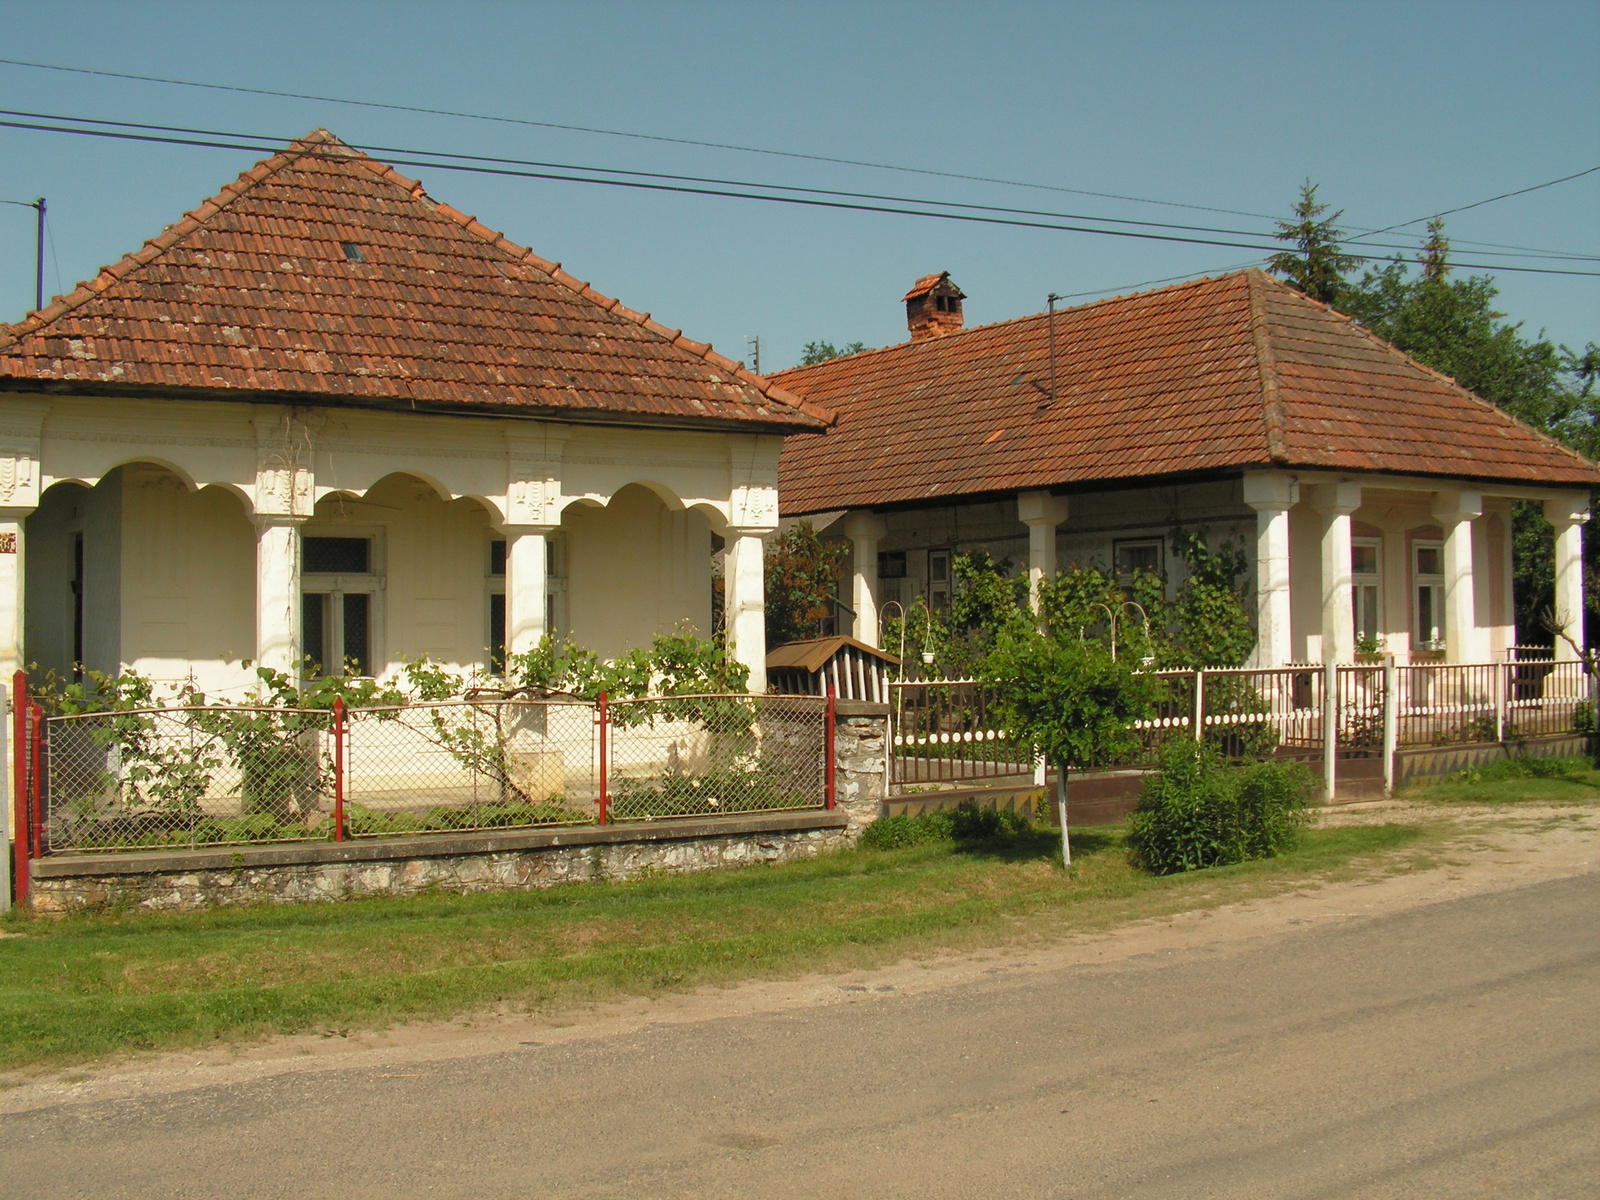 402 Szép, egységes régi házak Bódvarákón